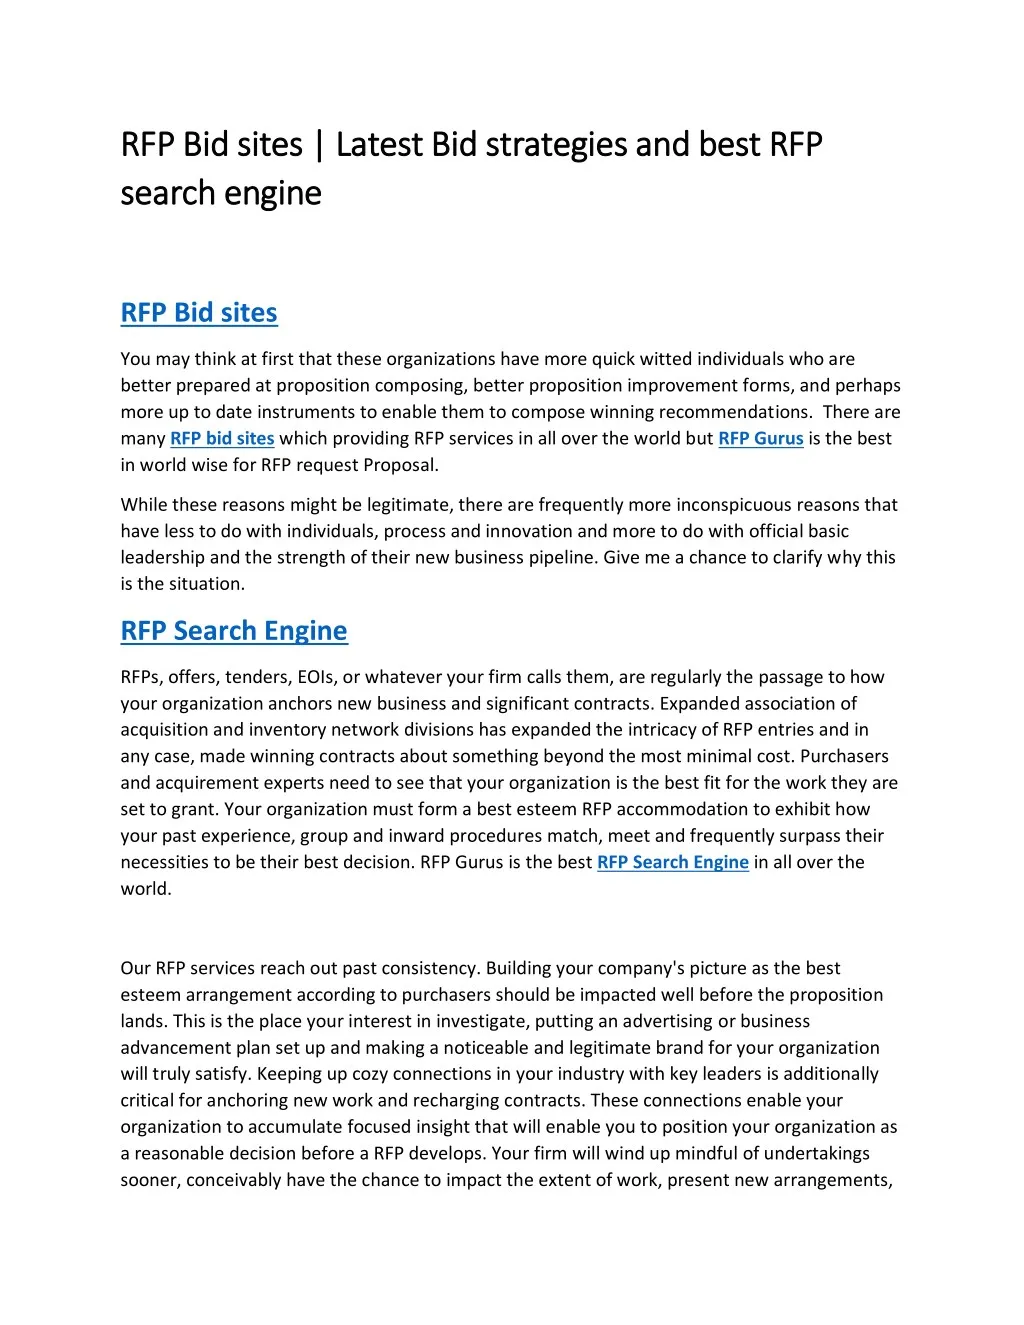 rfp bid sites latest bid strategies and best